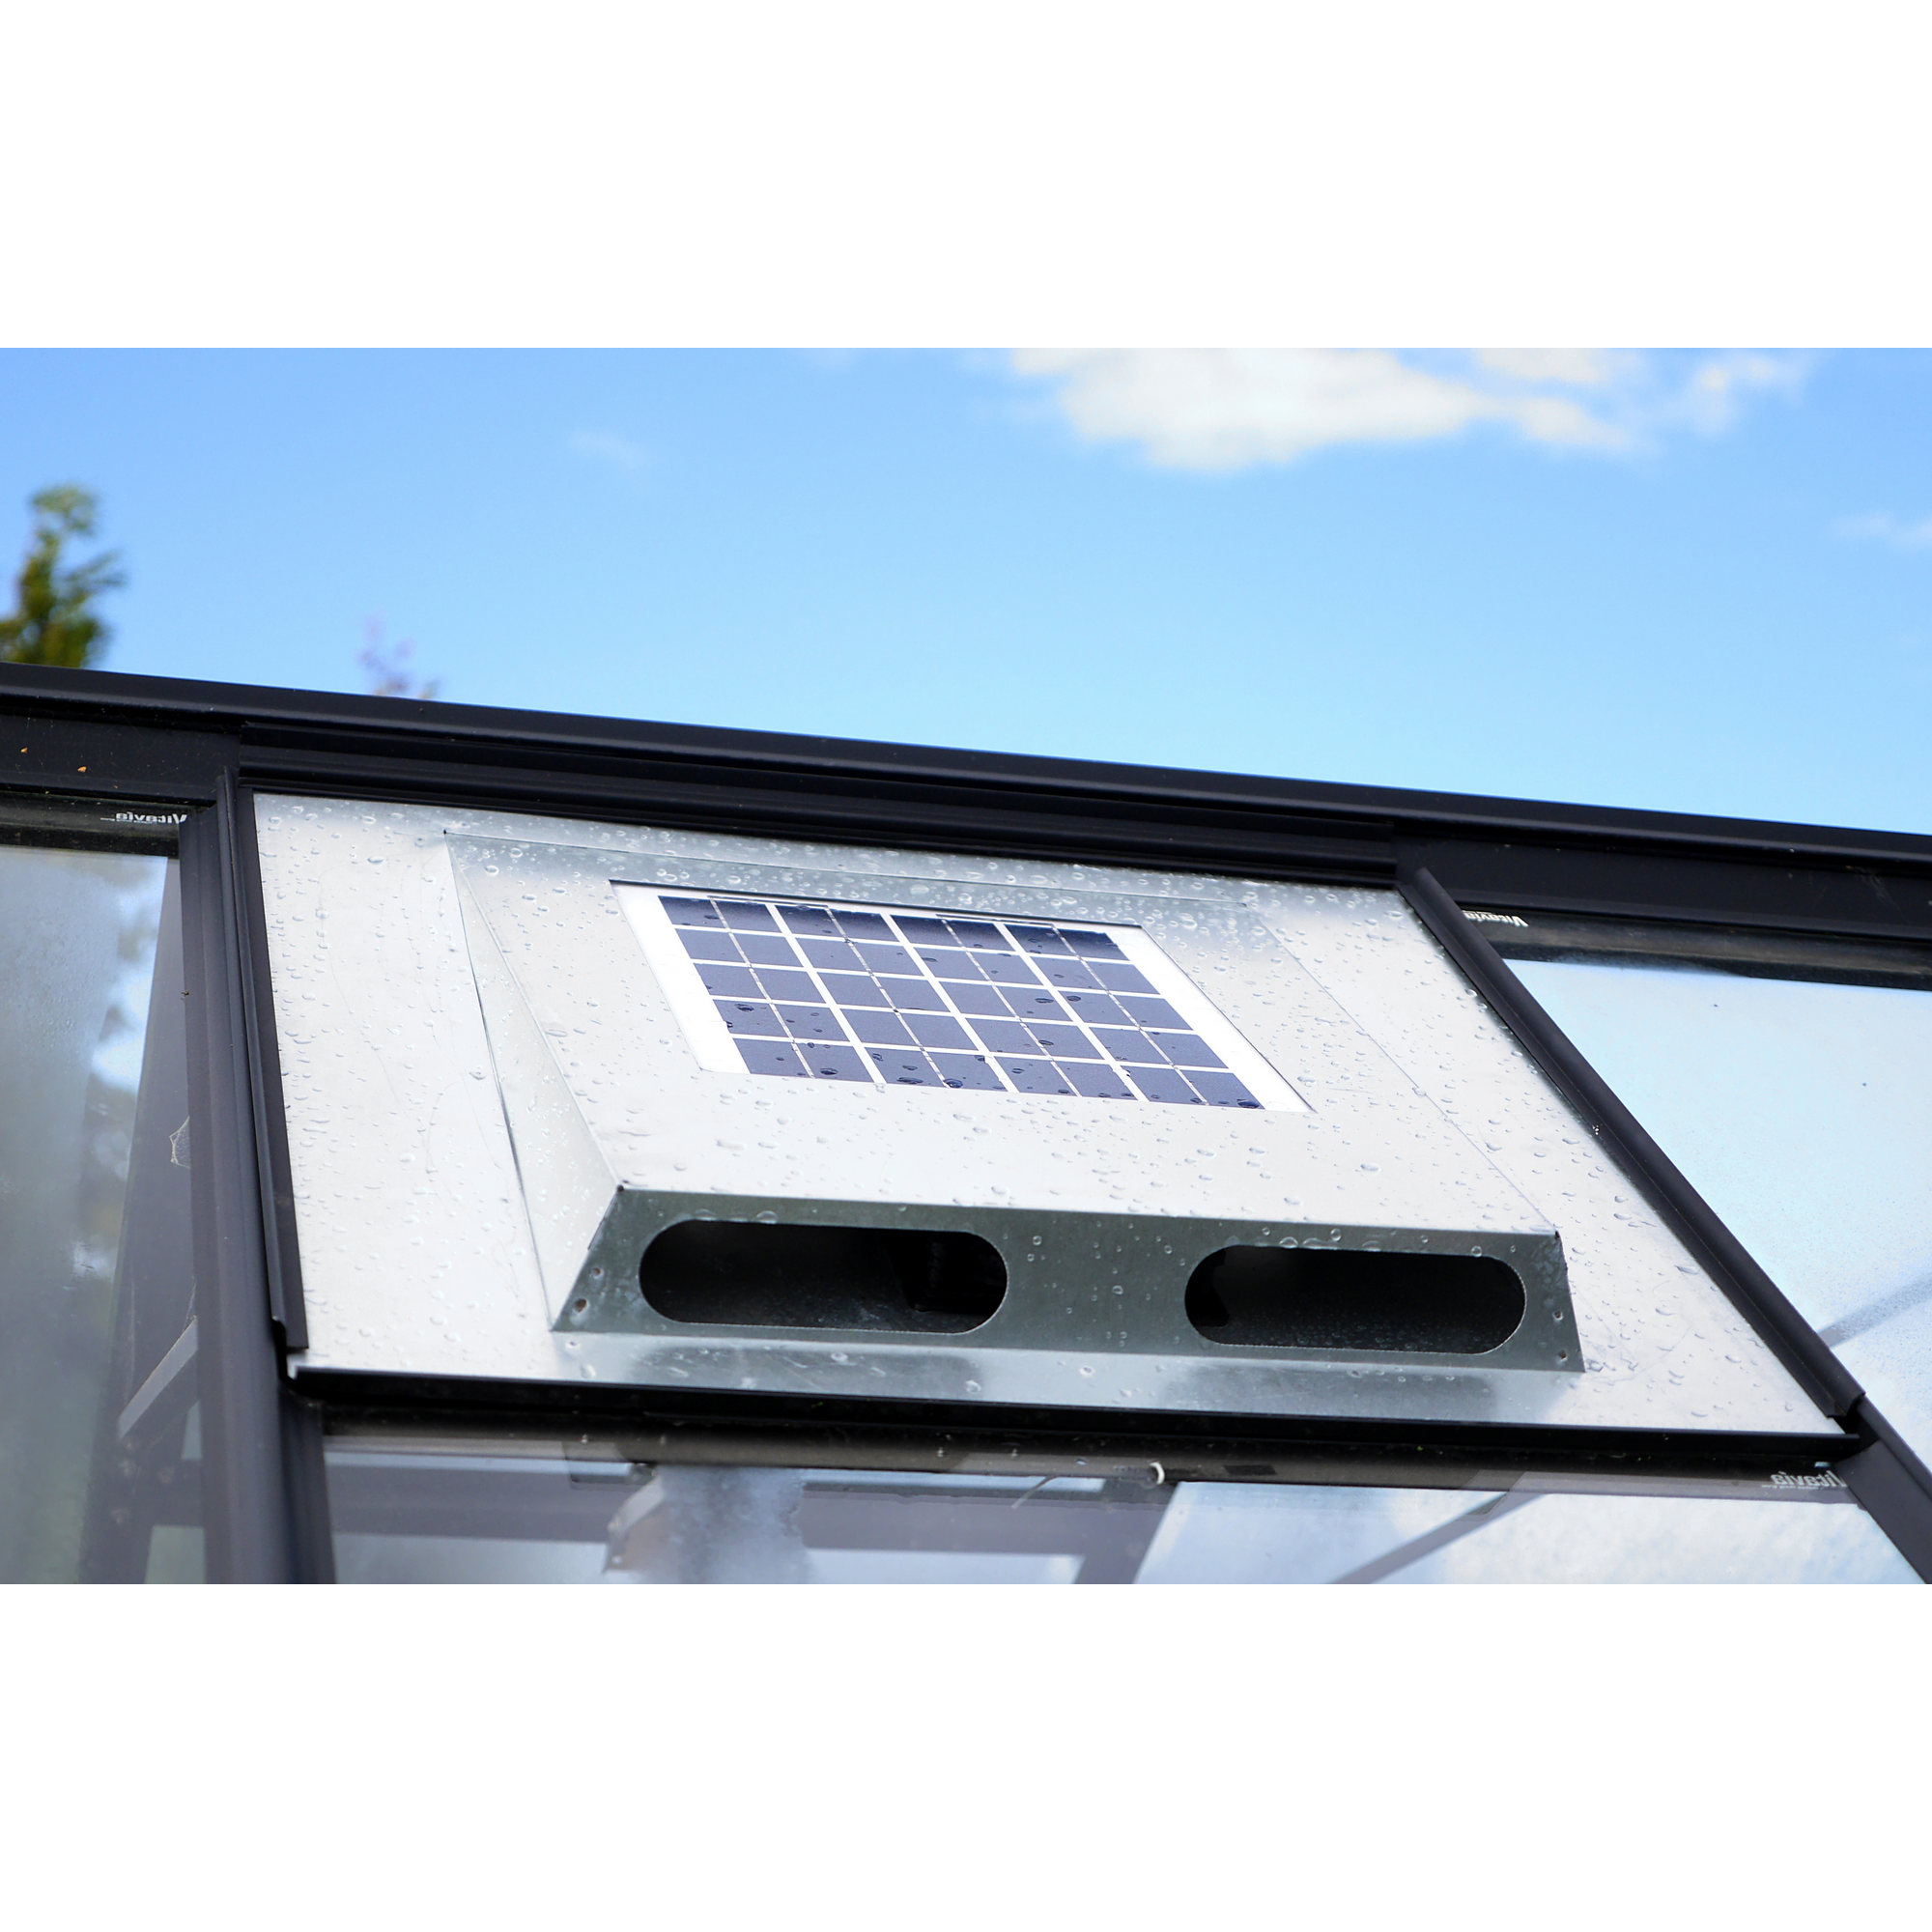 Solar-Dachventilator für Gewächshäuser Stahlblech 60 x 54 x 5 cm + product picture